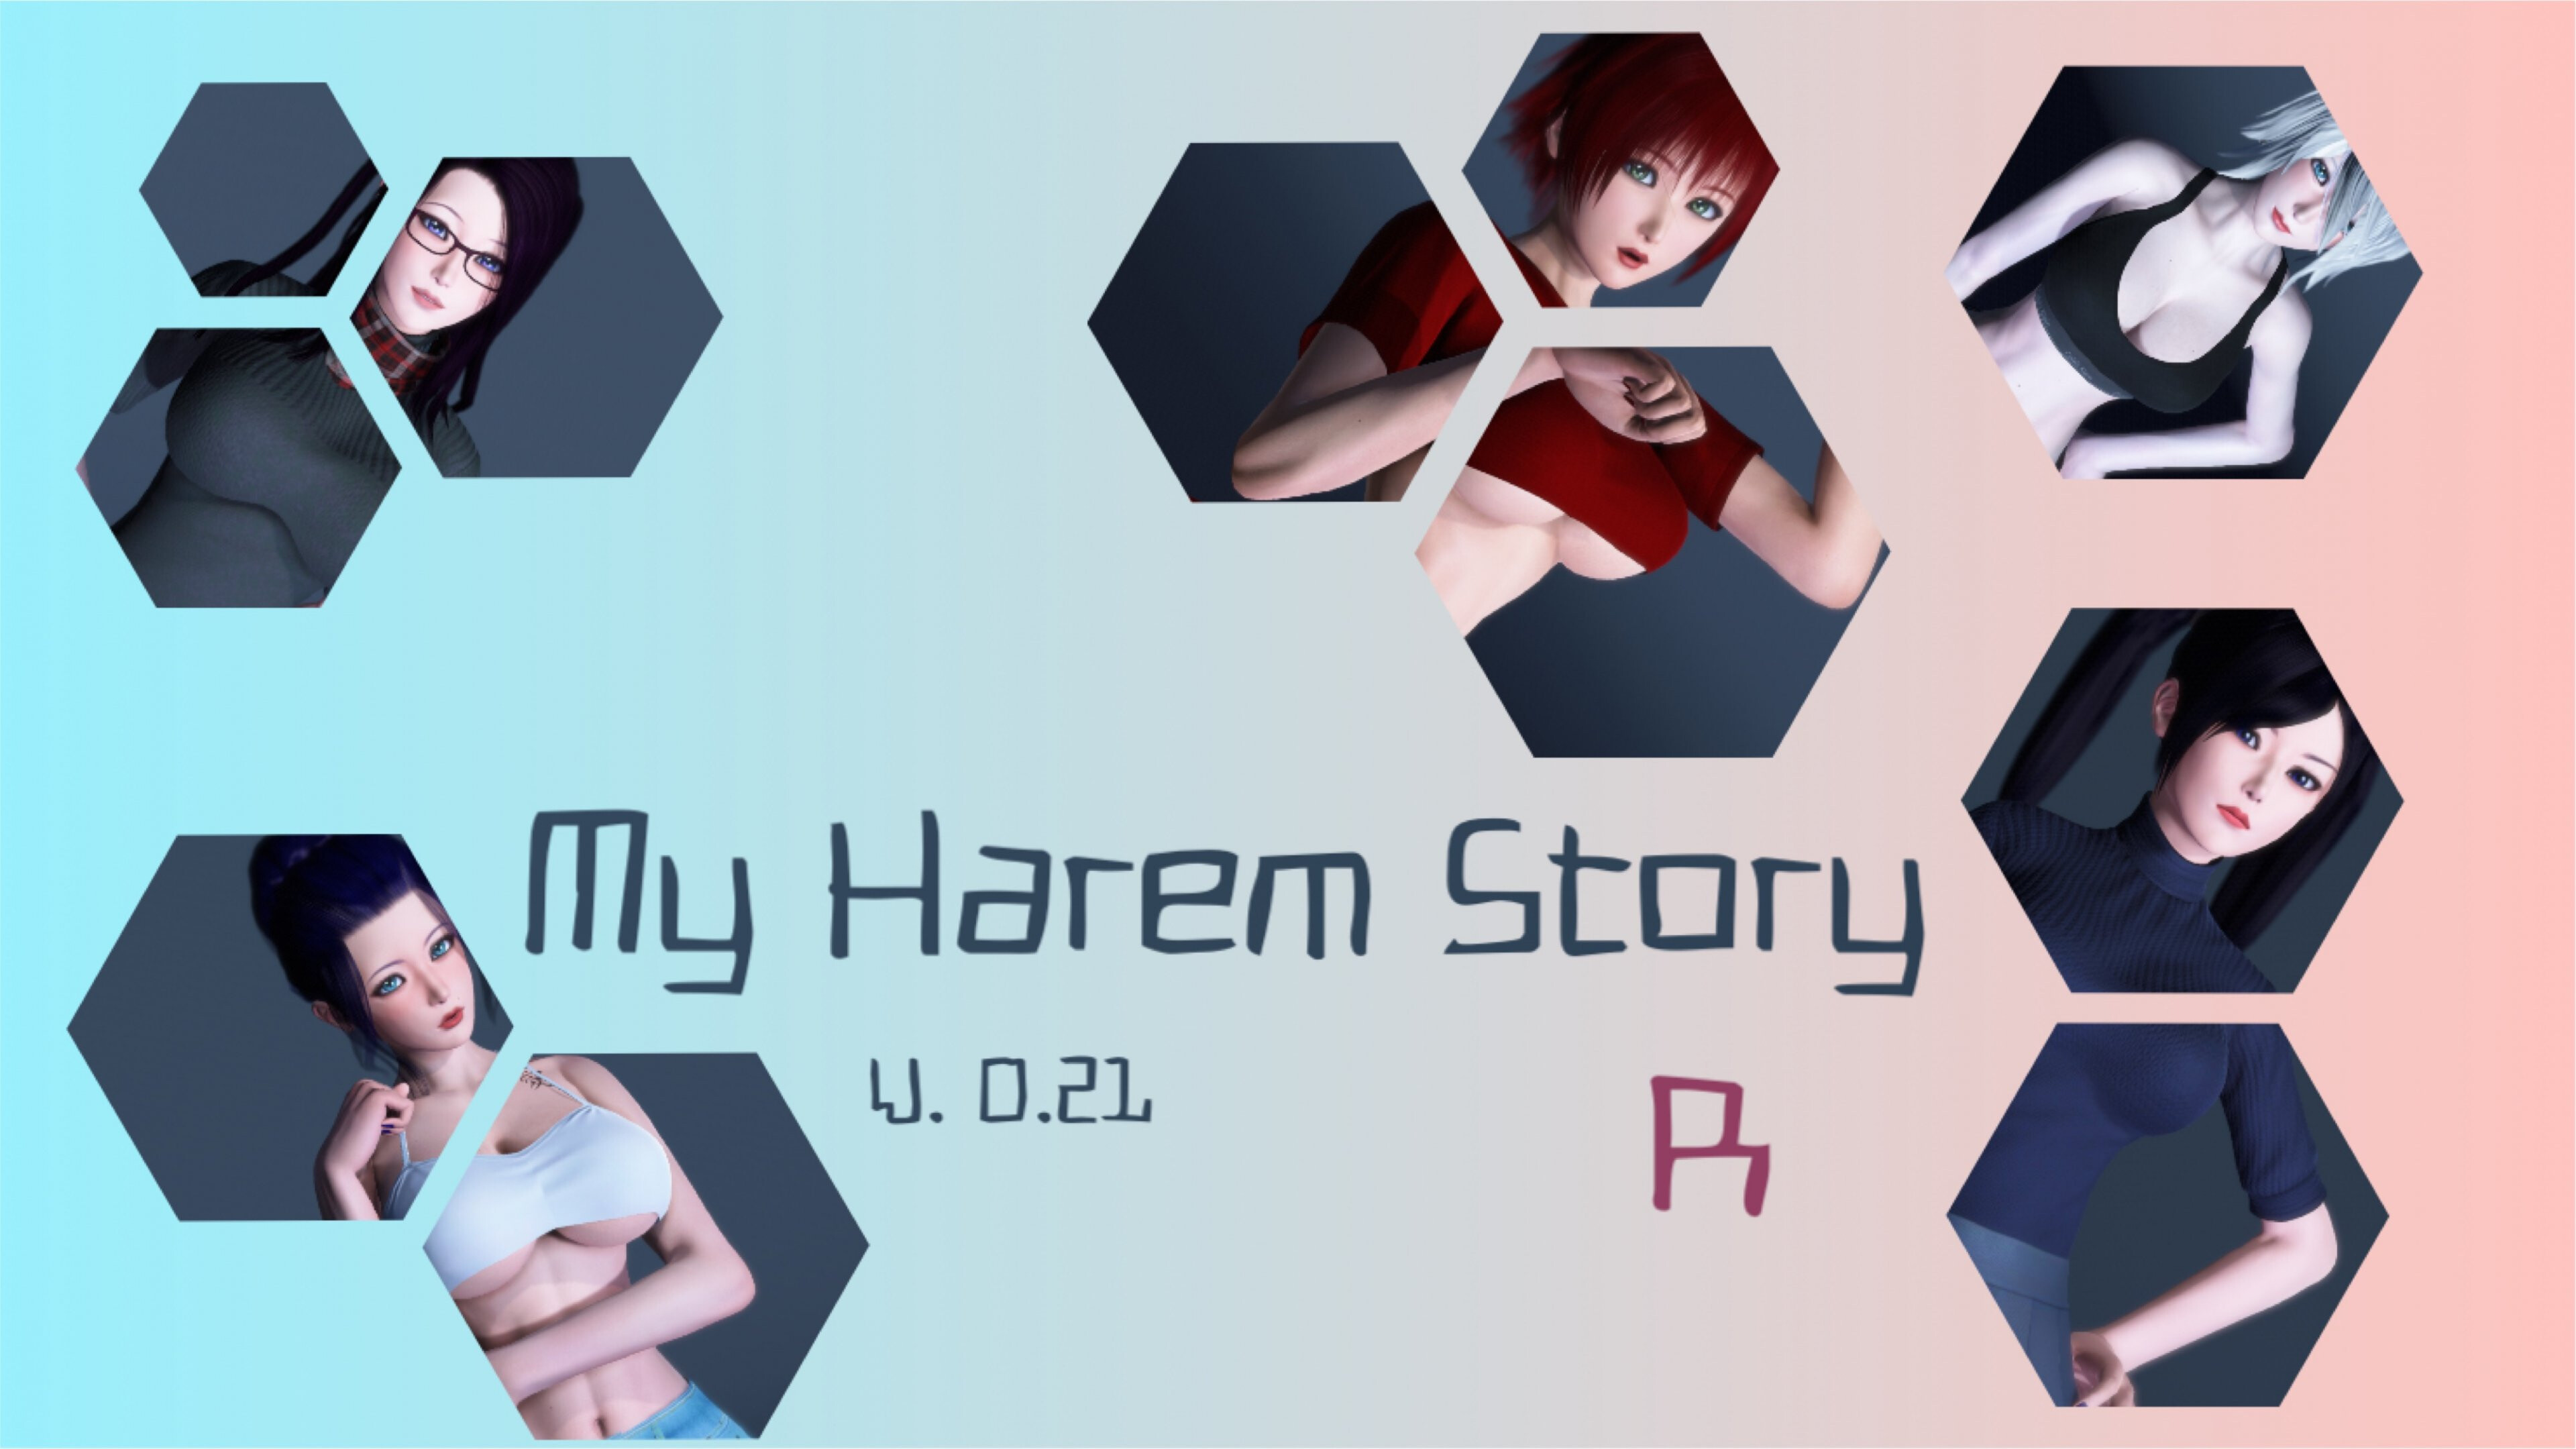 My Harem Story R Main Image